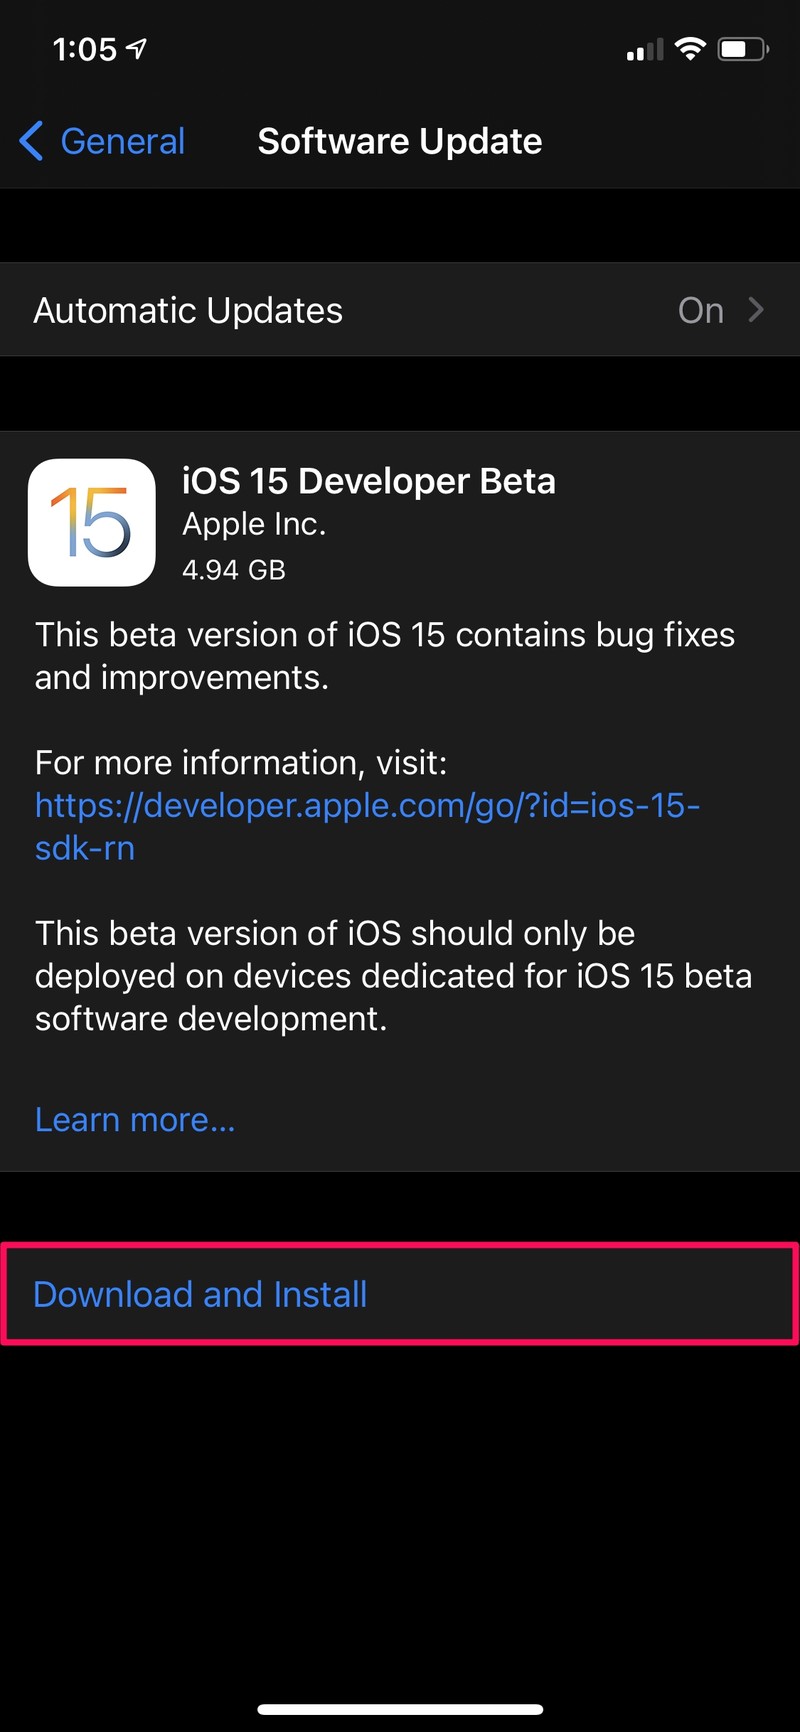 如何在 iPhone 上安装 iOS 15 Developer Beta